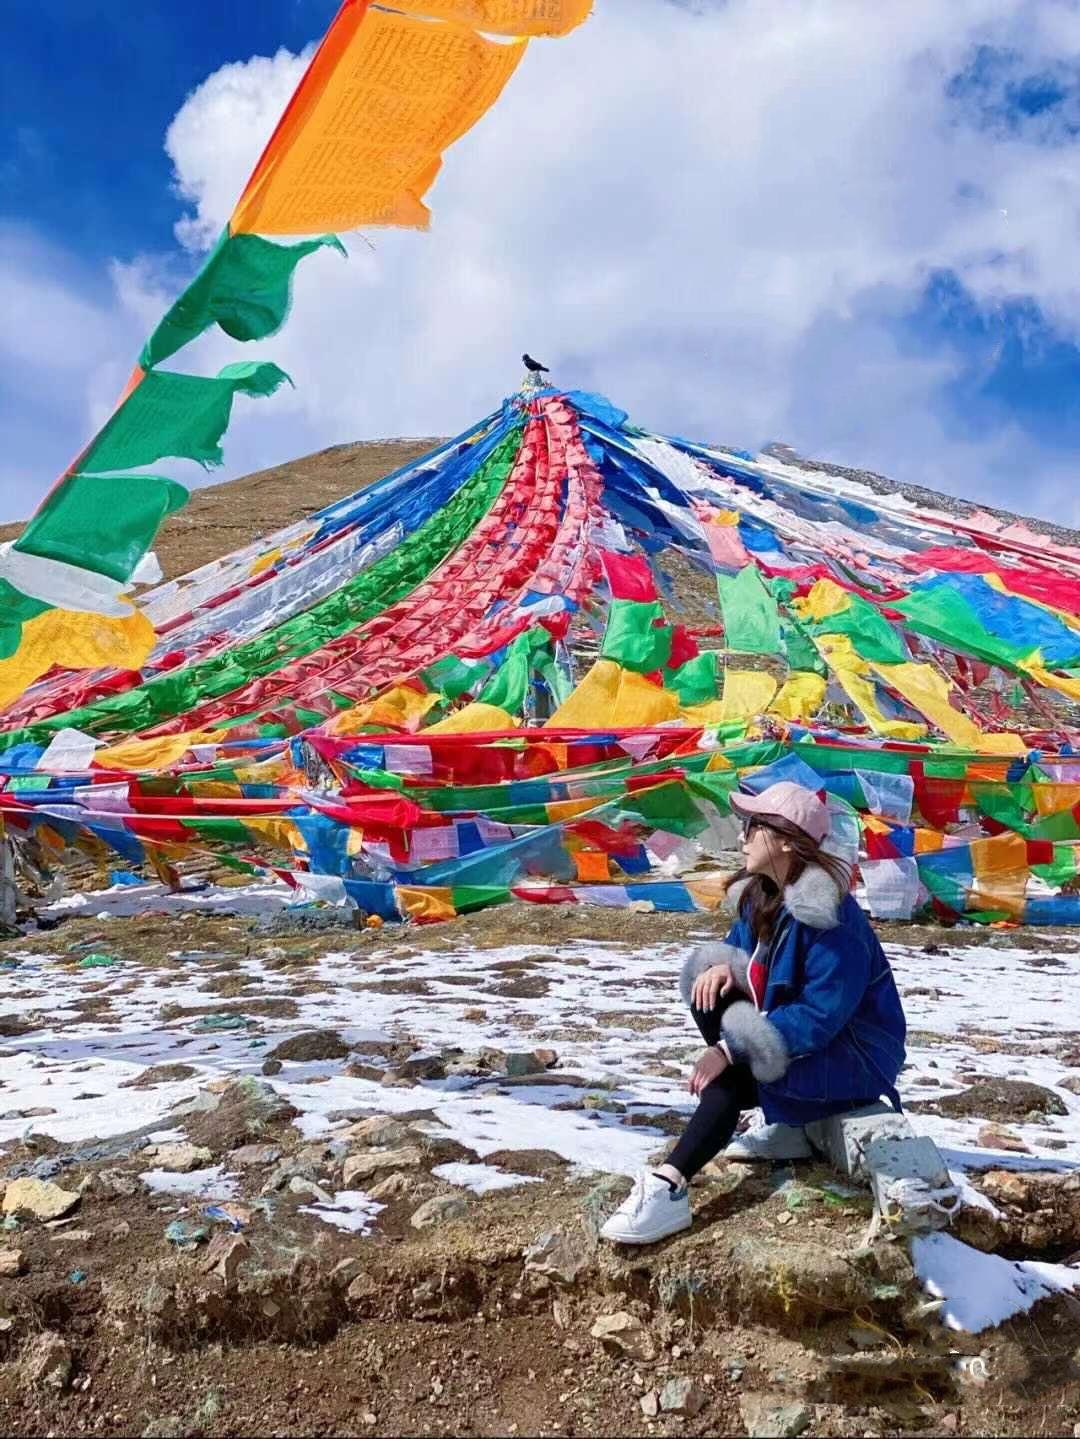 在进入西藏旅游之前，一定要注意这些禁忌 | 布达拉宫